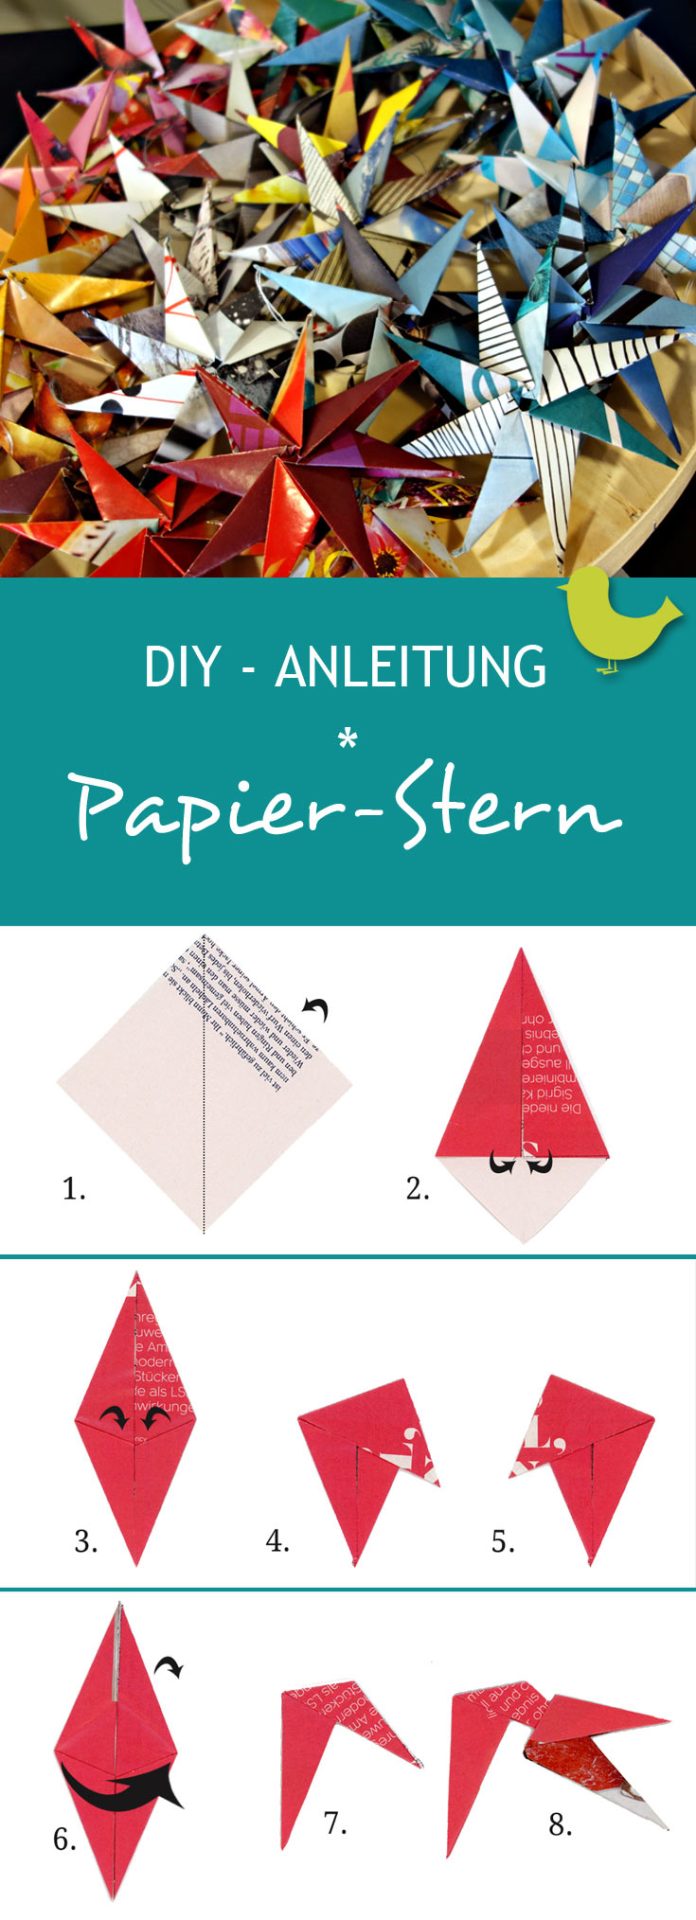 DIY - Anleitung Papier-Stern zu Weihnachten